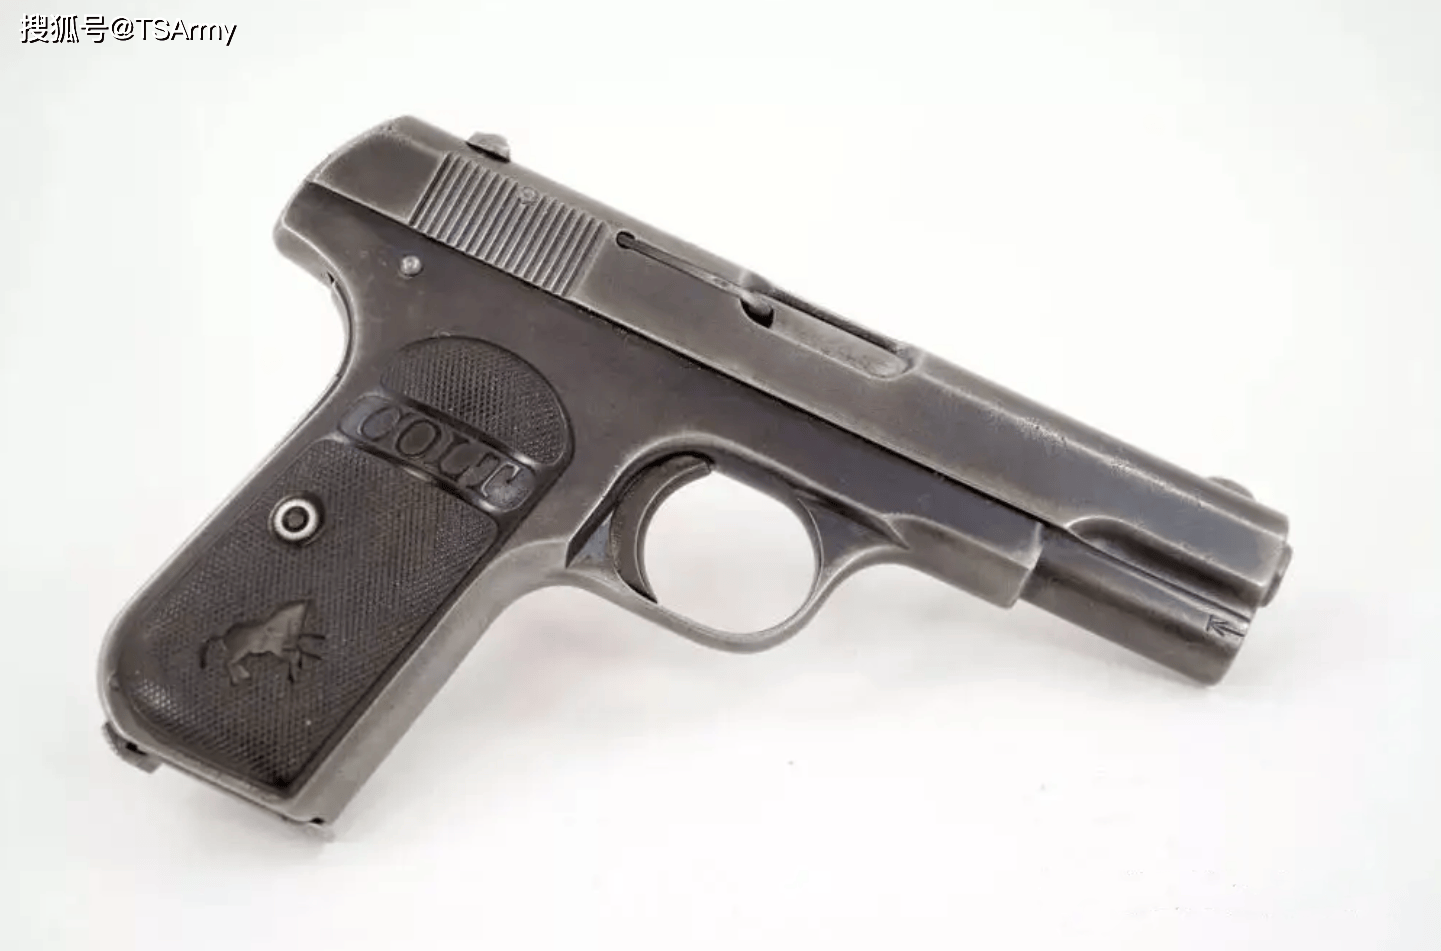 2手枪,同样是出自勃朗宁大师之手,由美国柯尔特公司生产